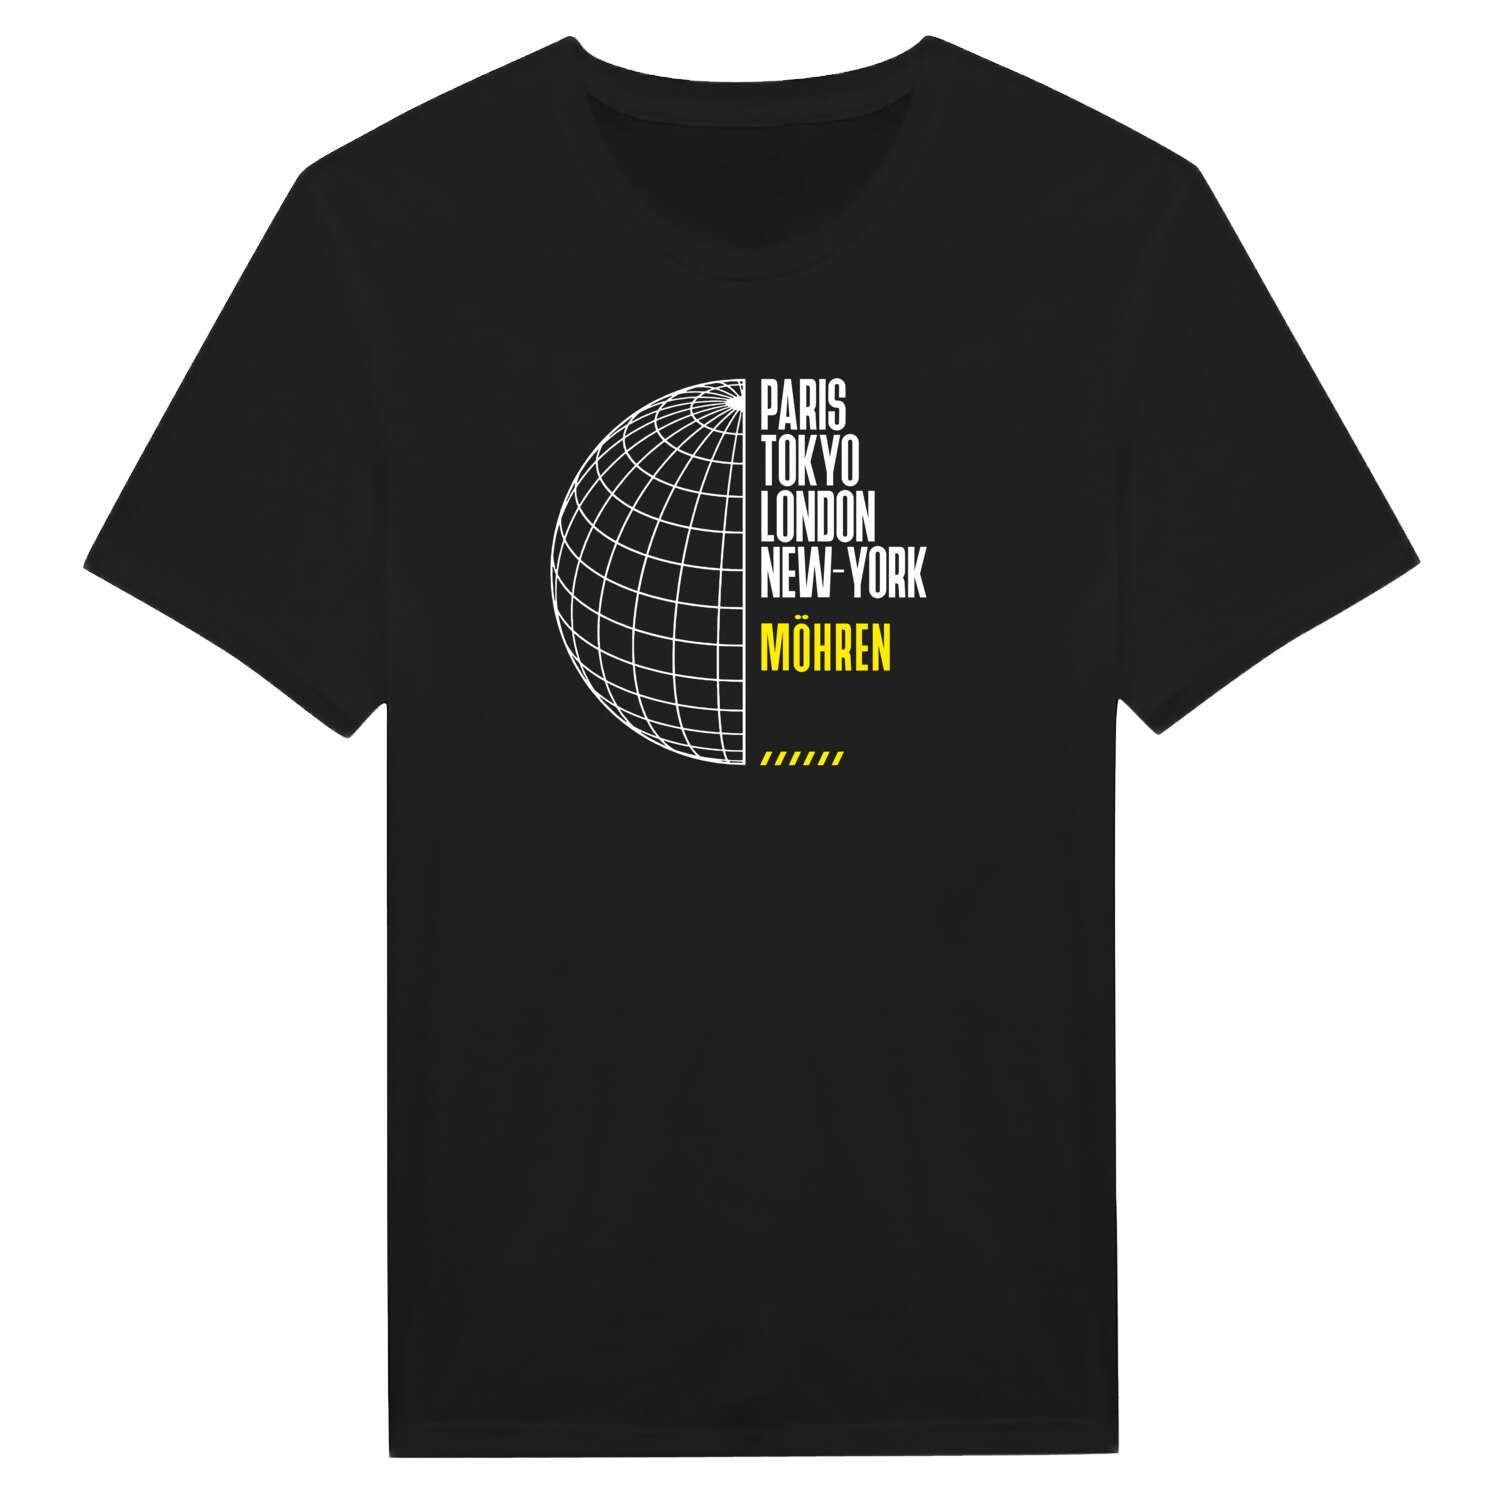 Möhren T-Shirt »Paris Tokyo London«